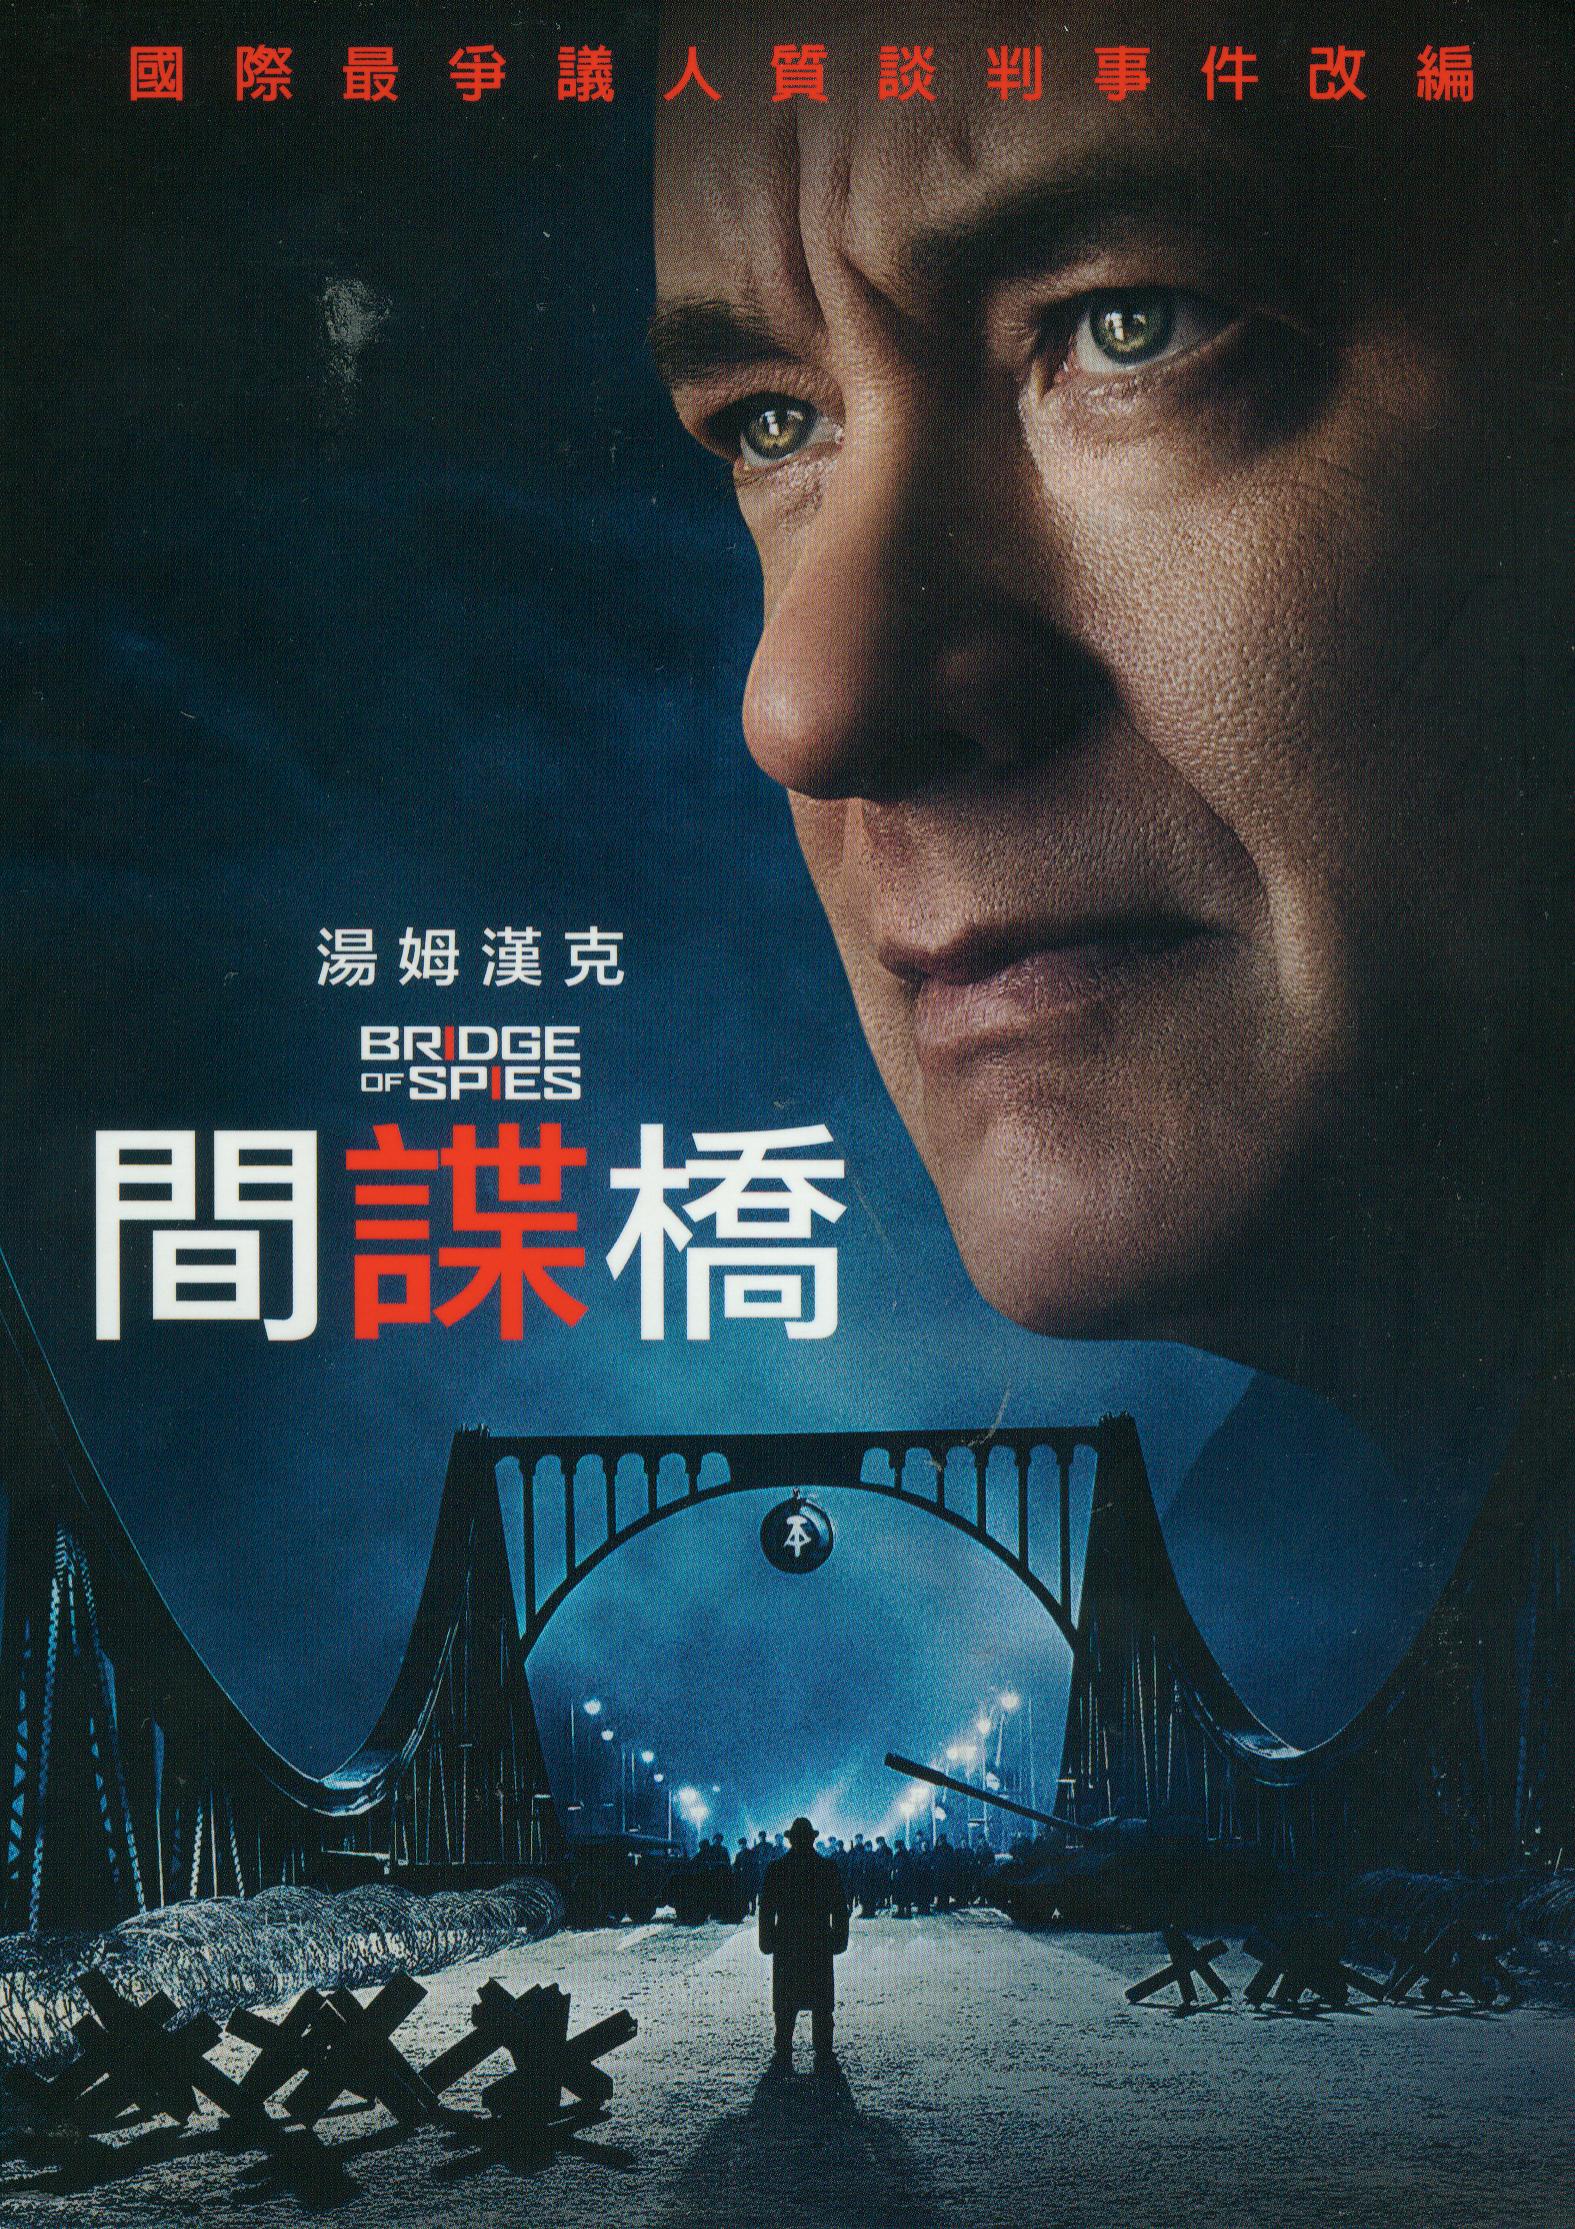 間諜橋[保護級:劇情] : Bridge of spies